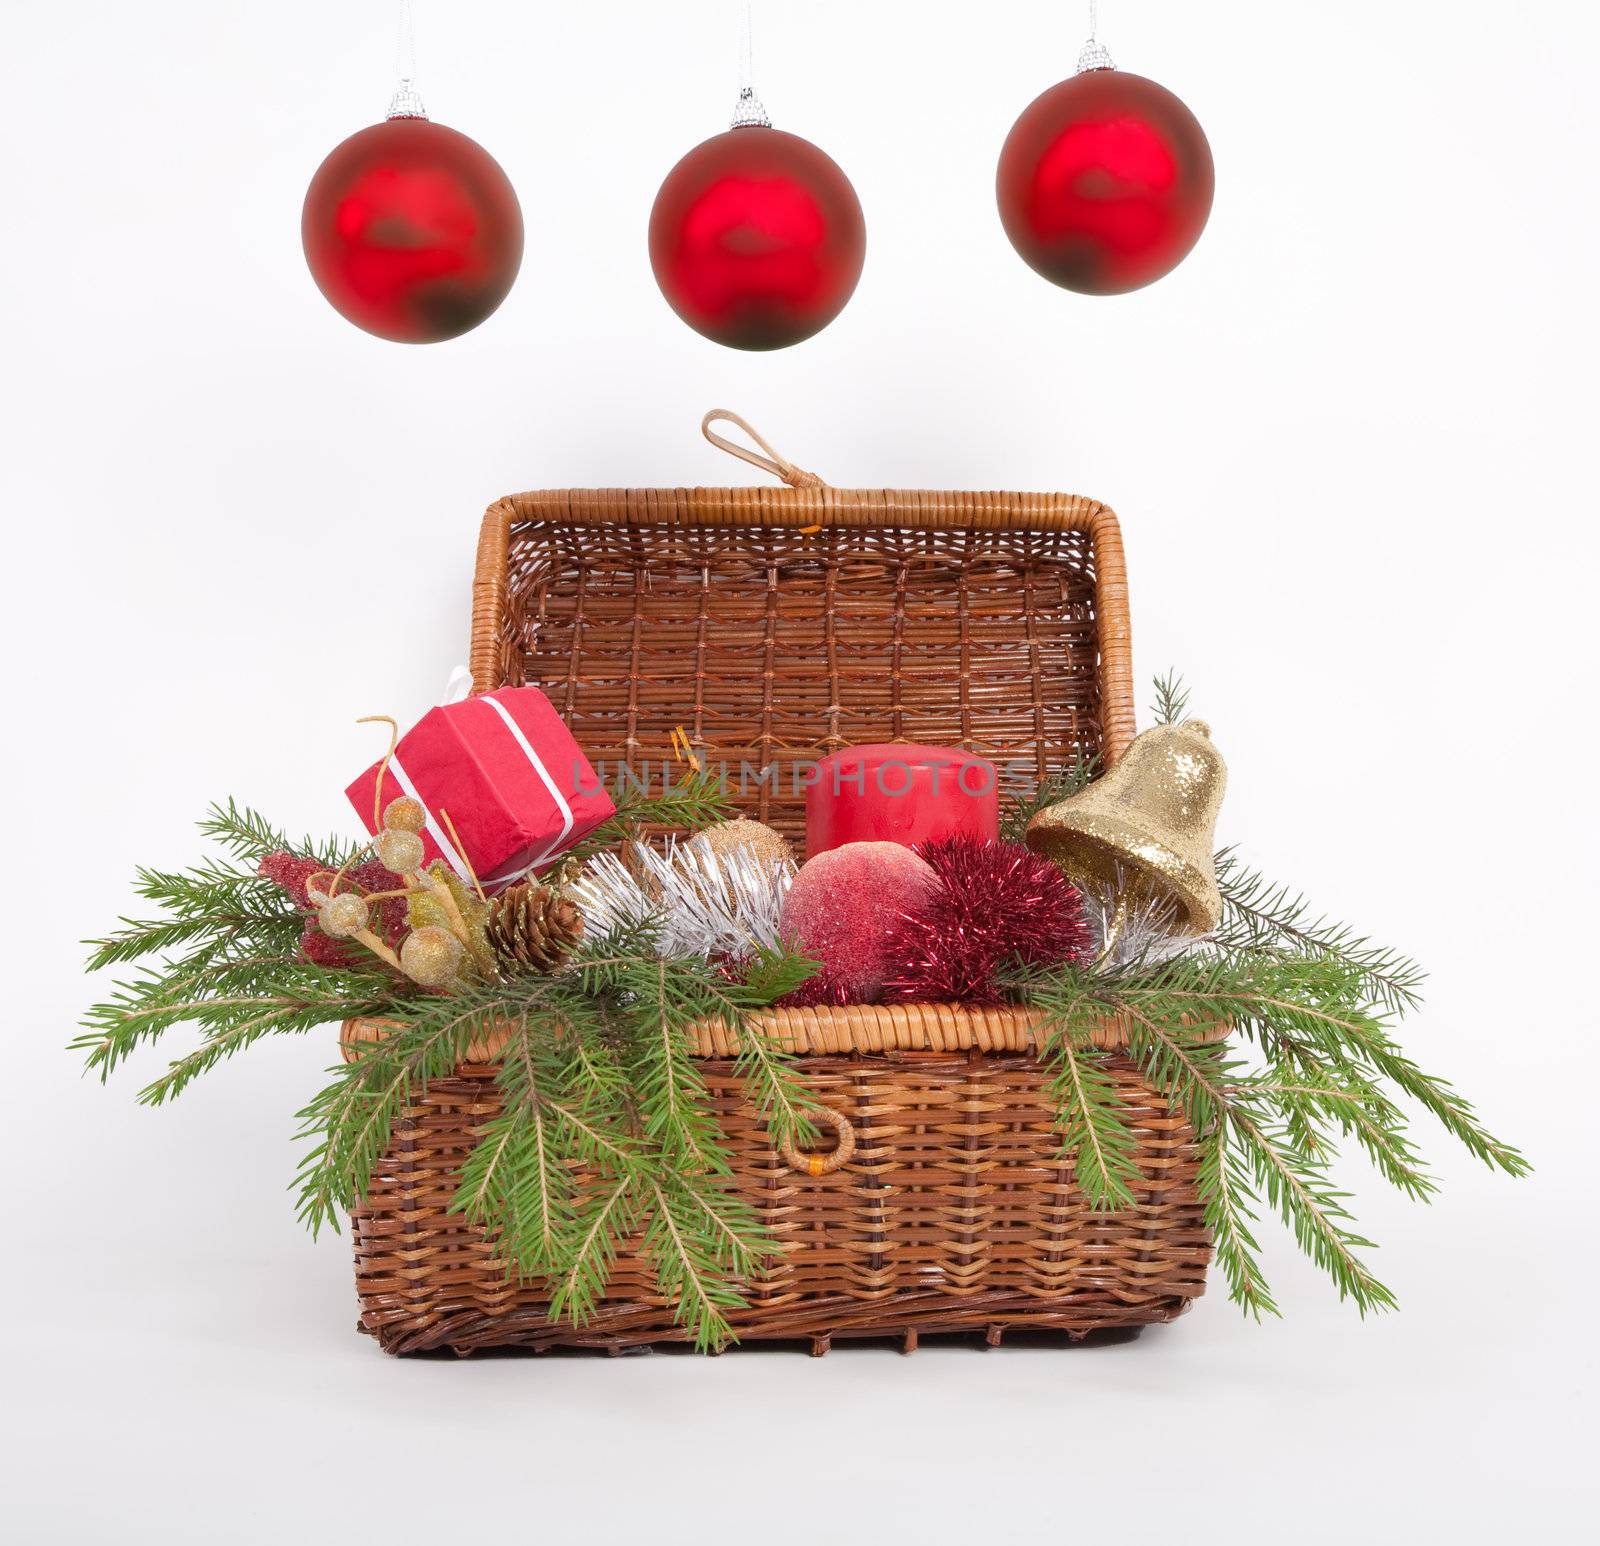 Three Christmas balls by alex_garaev